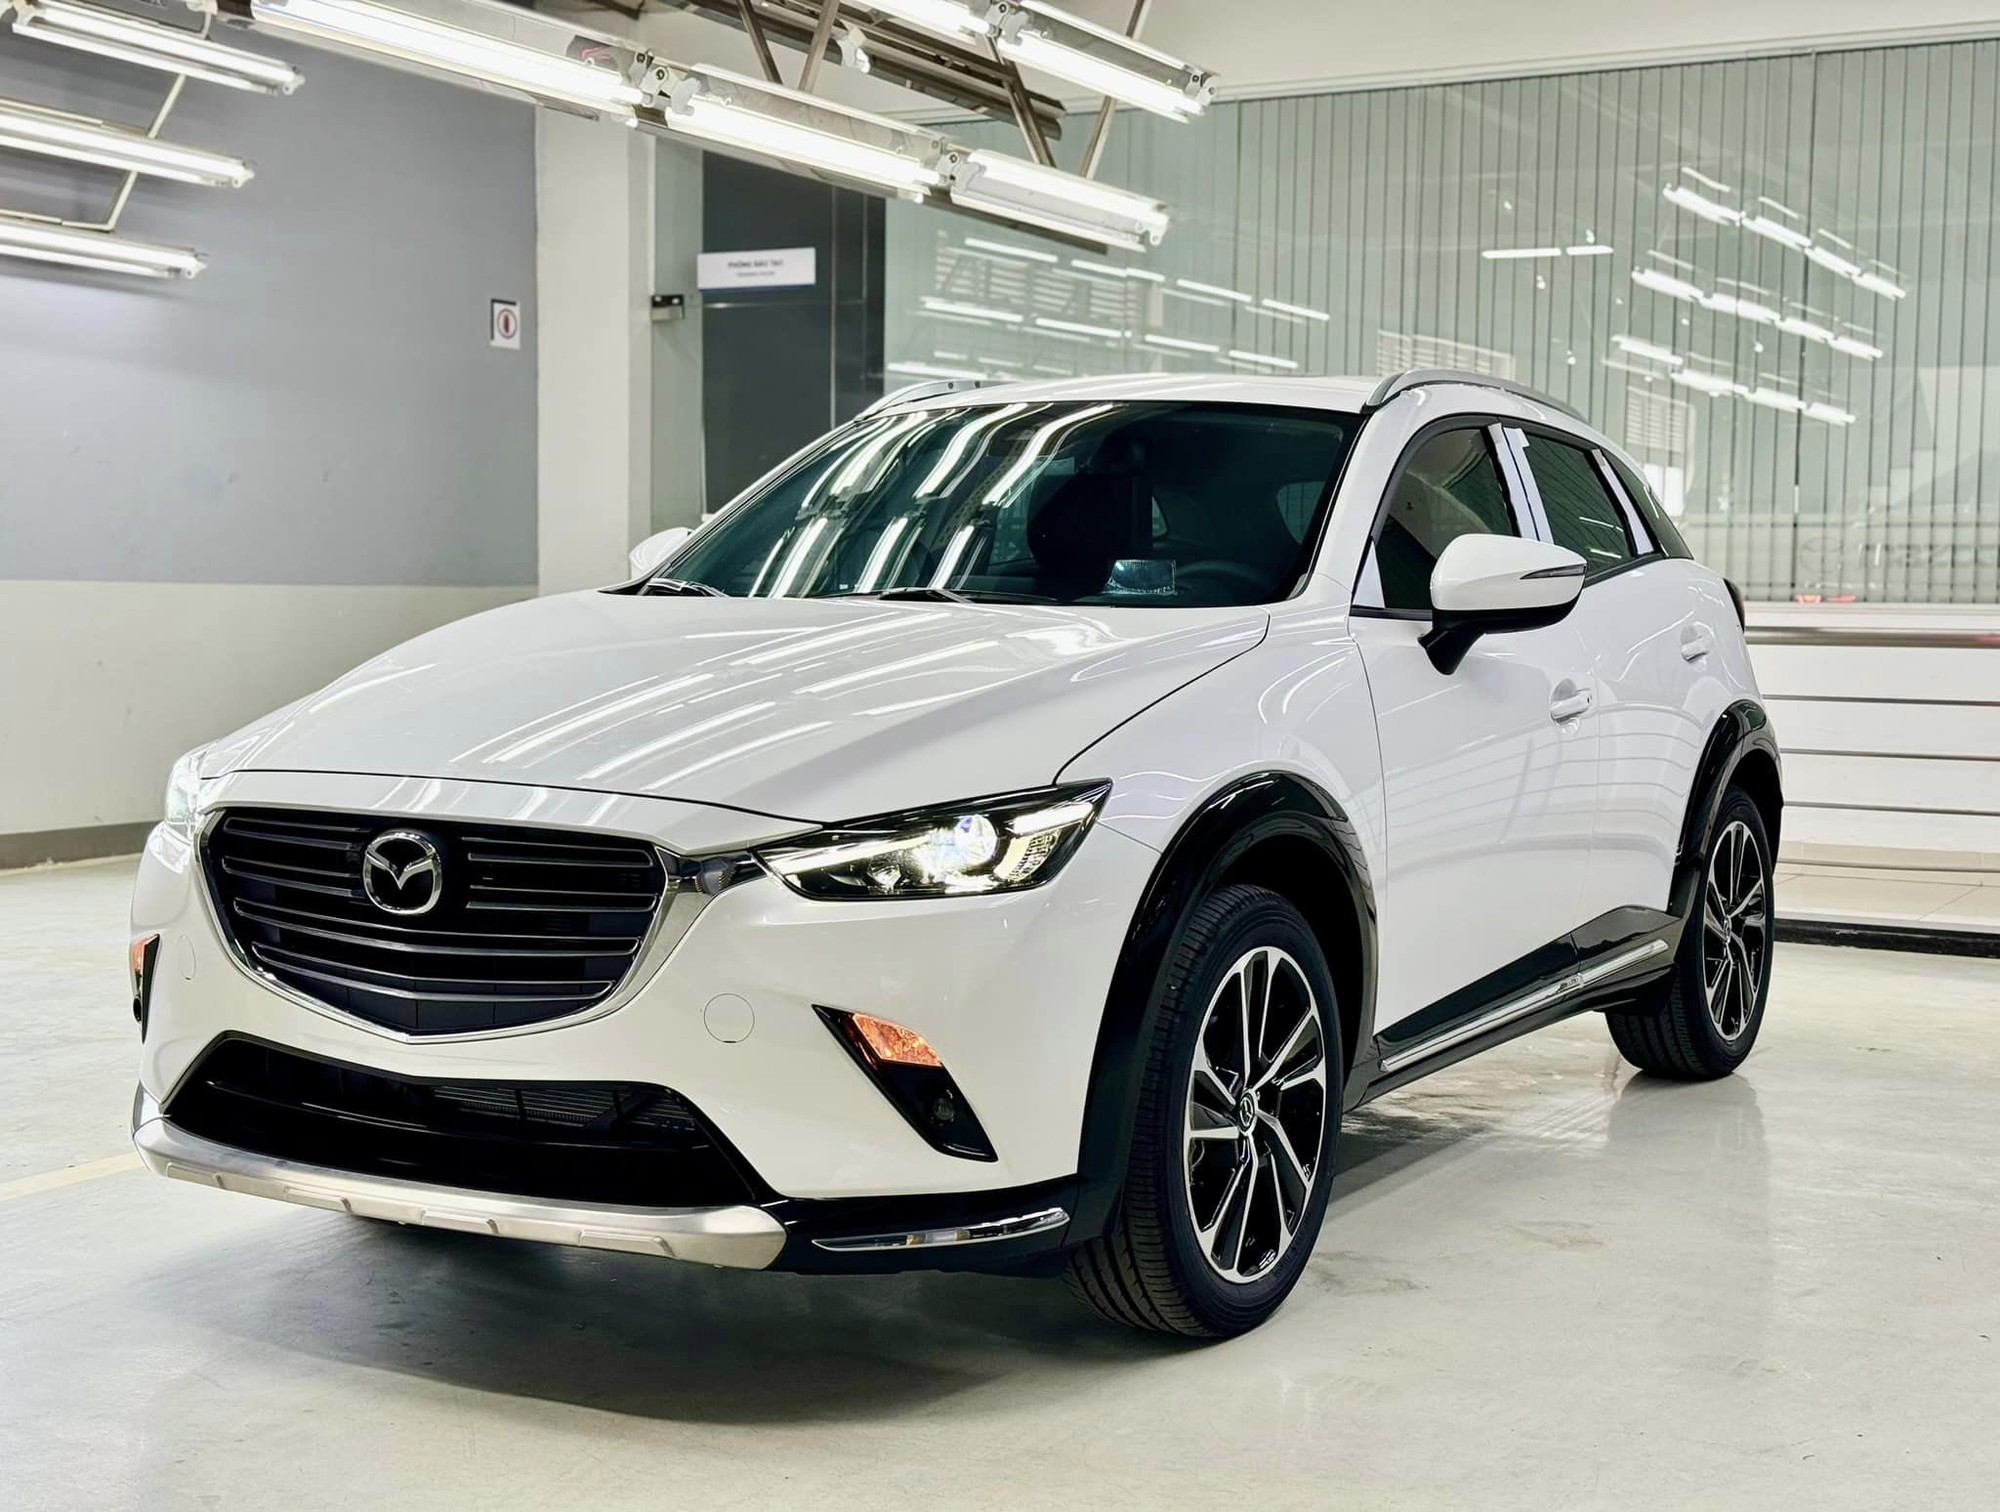 Loạt xe Mazda nhập tăng giá: CX-3 'phá' mức giá thấp kỷ lục từng xác lập, Mazda2 vẫn rẻ nhất phân khúc- Ảnh 8.